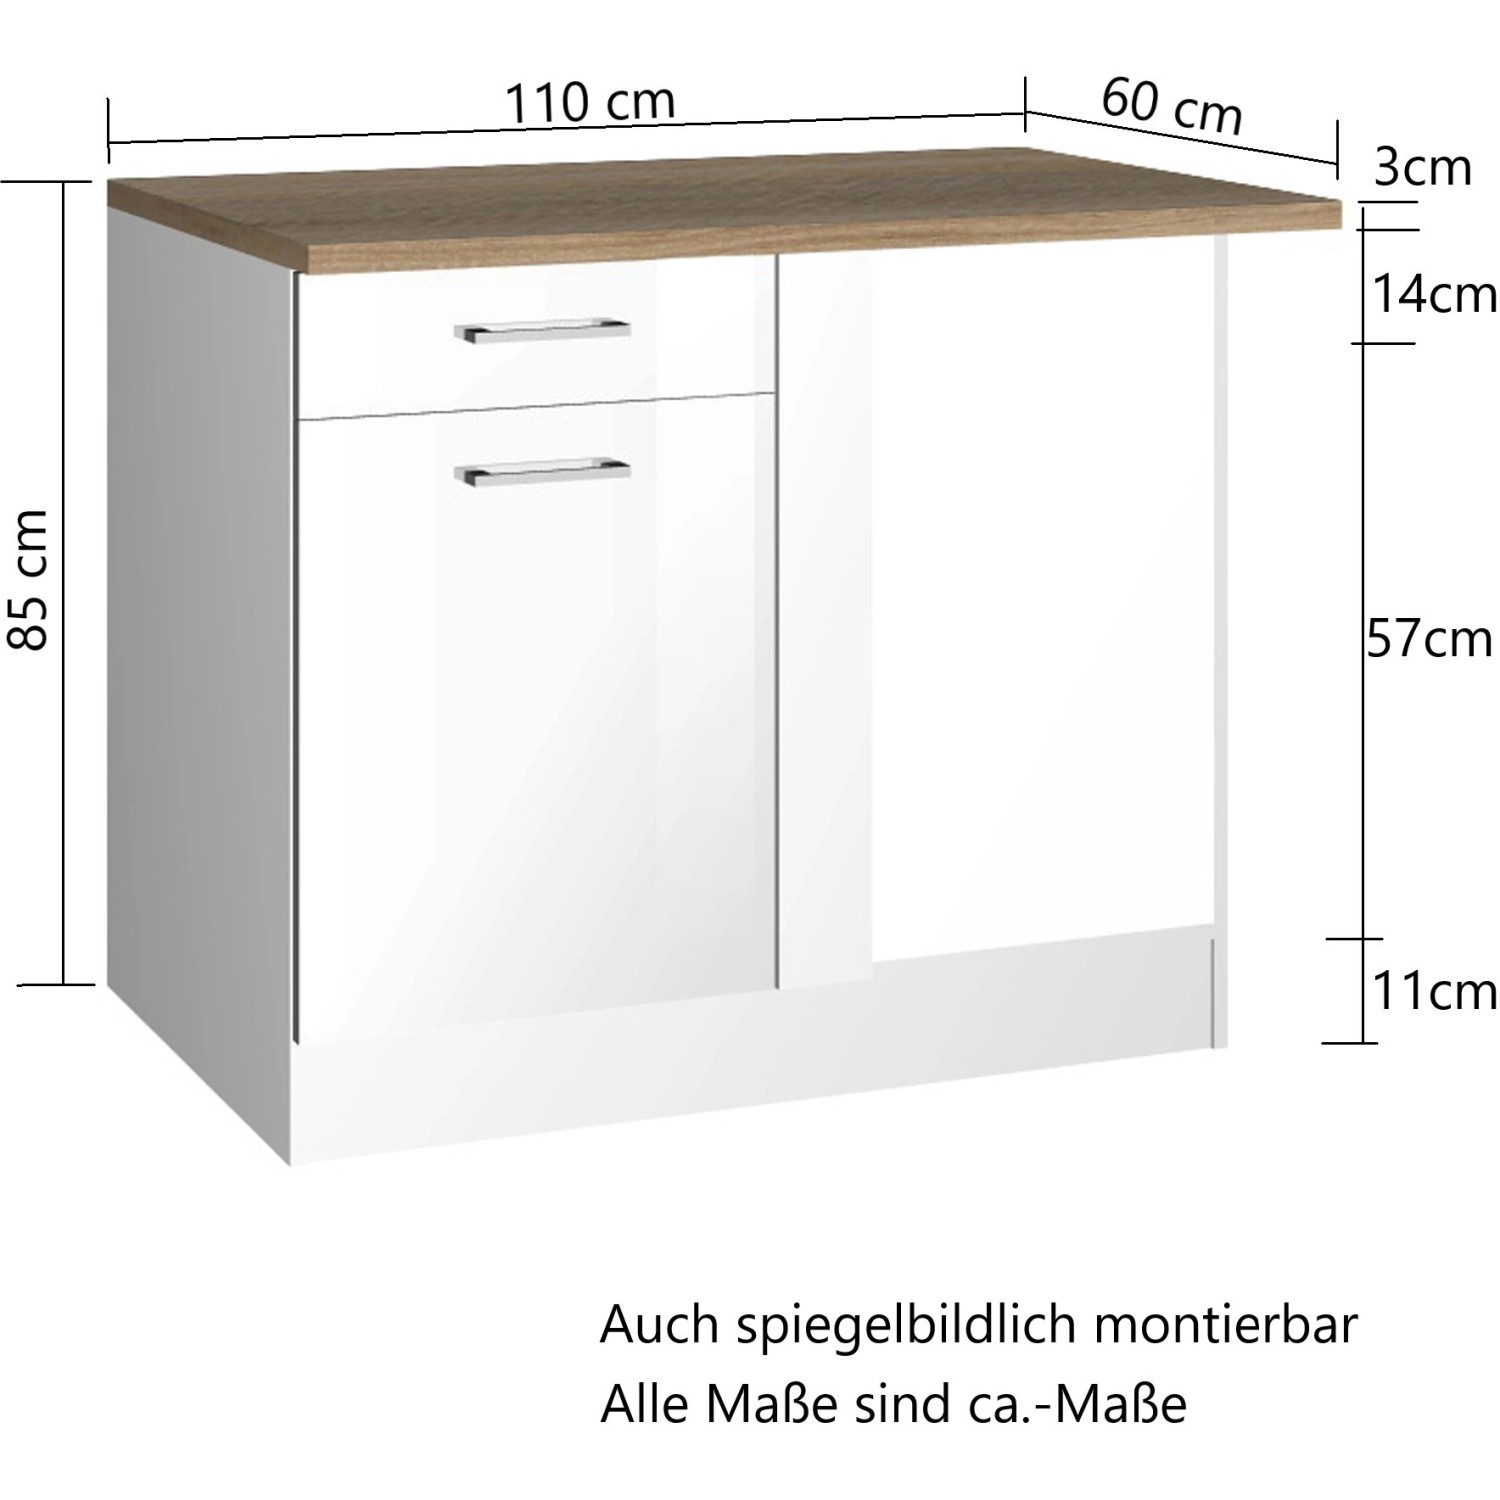 kaufen Möbel Mailand Küchen-Eckschrank Hochglanz OBI 110 bei Graphit/Graphit cm Held